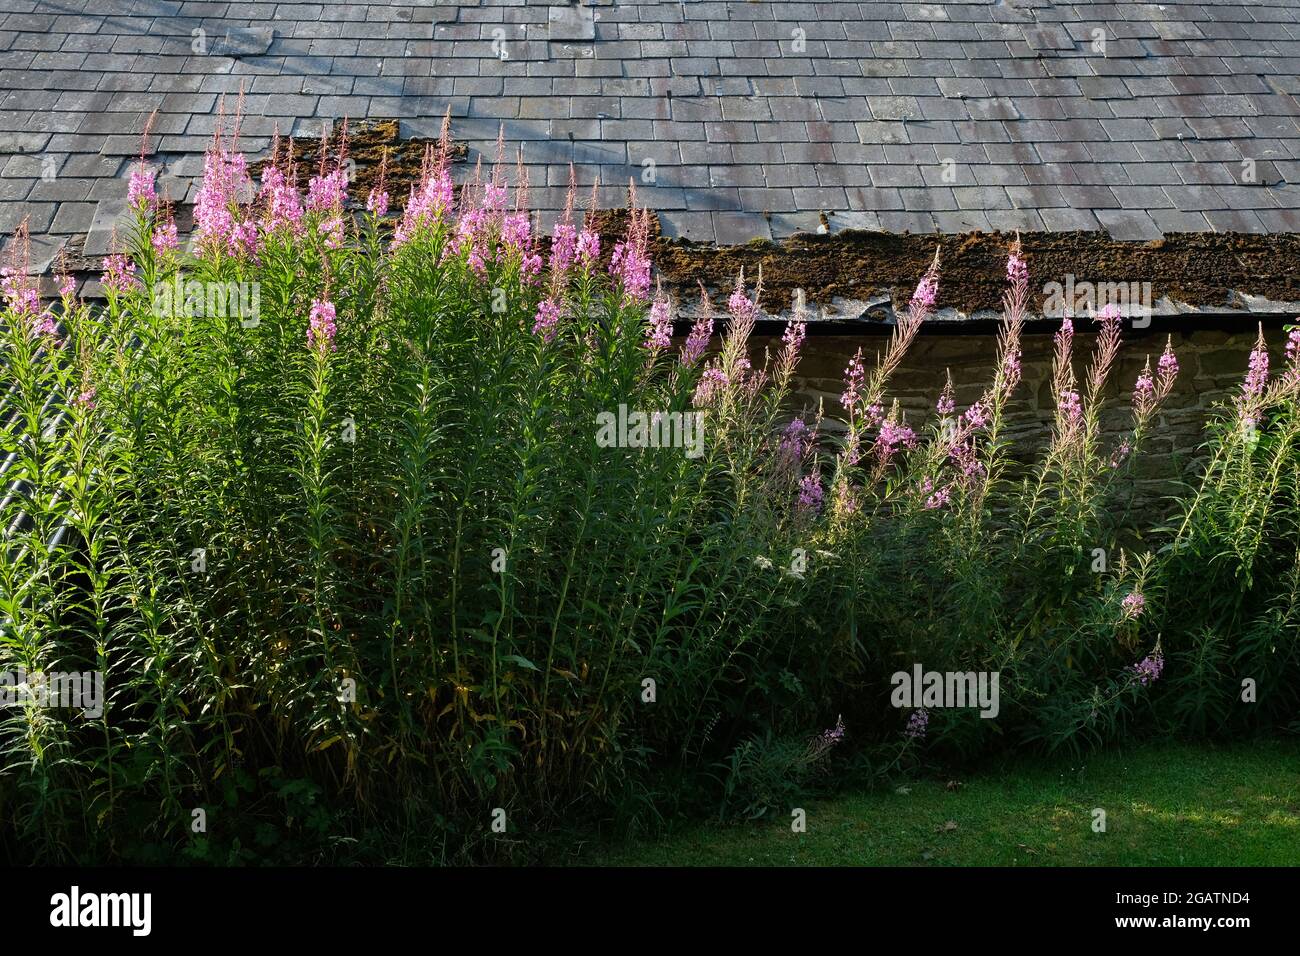 Le erbacce Rosebay Willowwib, anche chiamato Fireweed - Chamaenerion angustifolium - che crescono sotto un tetto di ardesia in Herefordshire, Inghilterra, Regno Unito Foto Stock